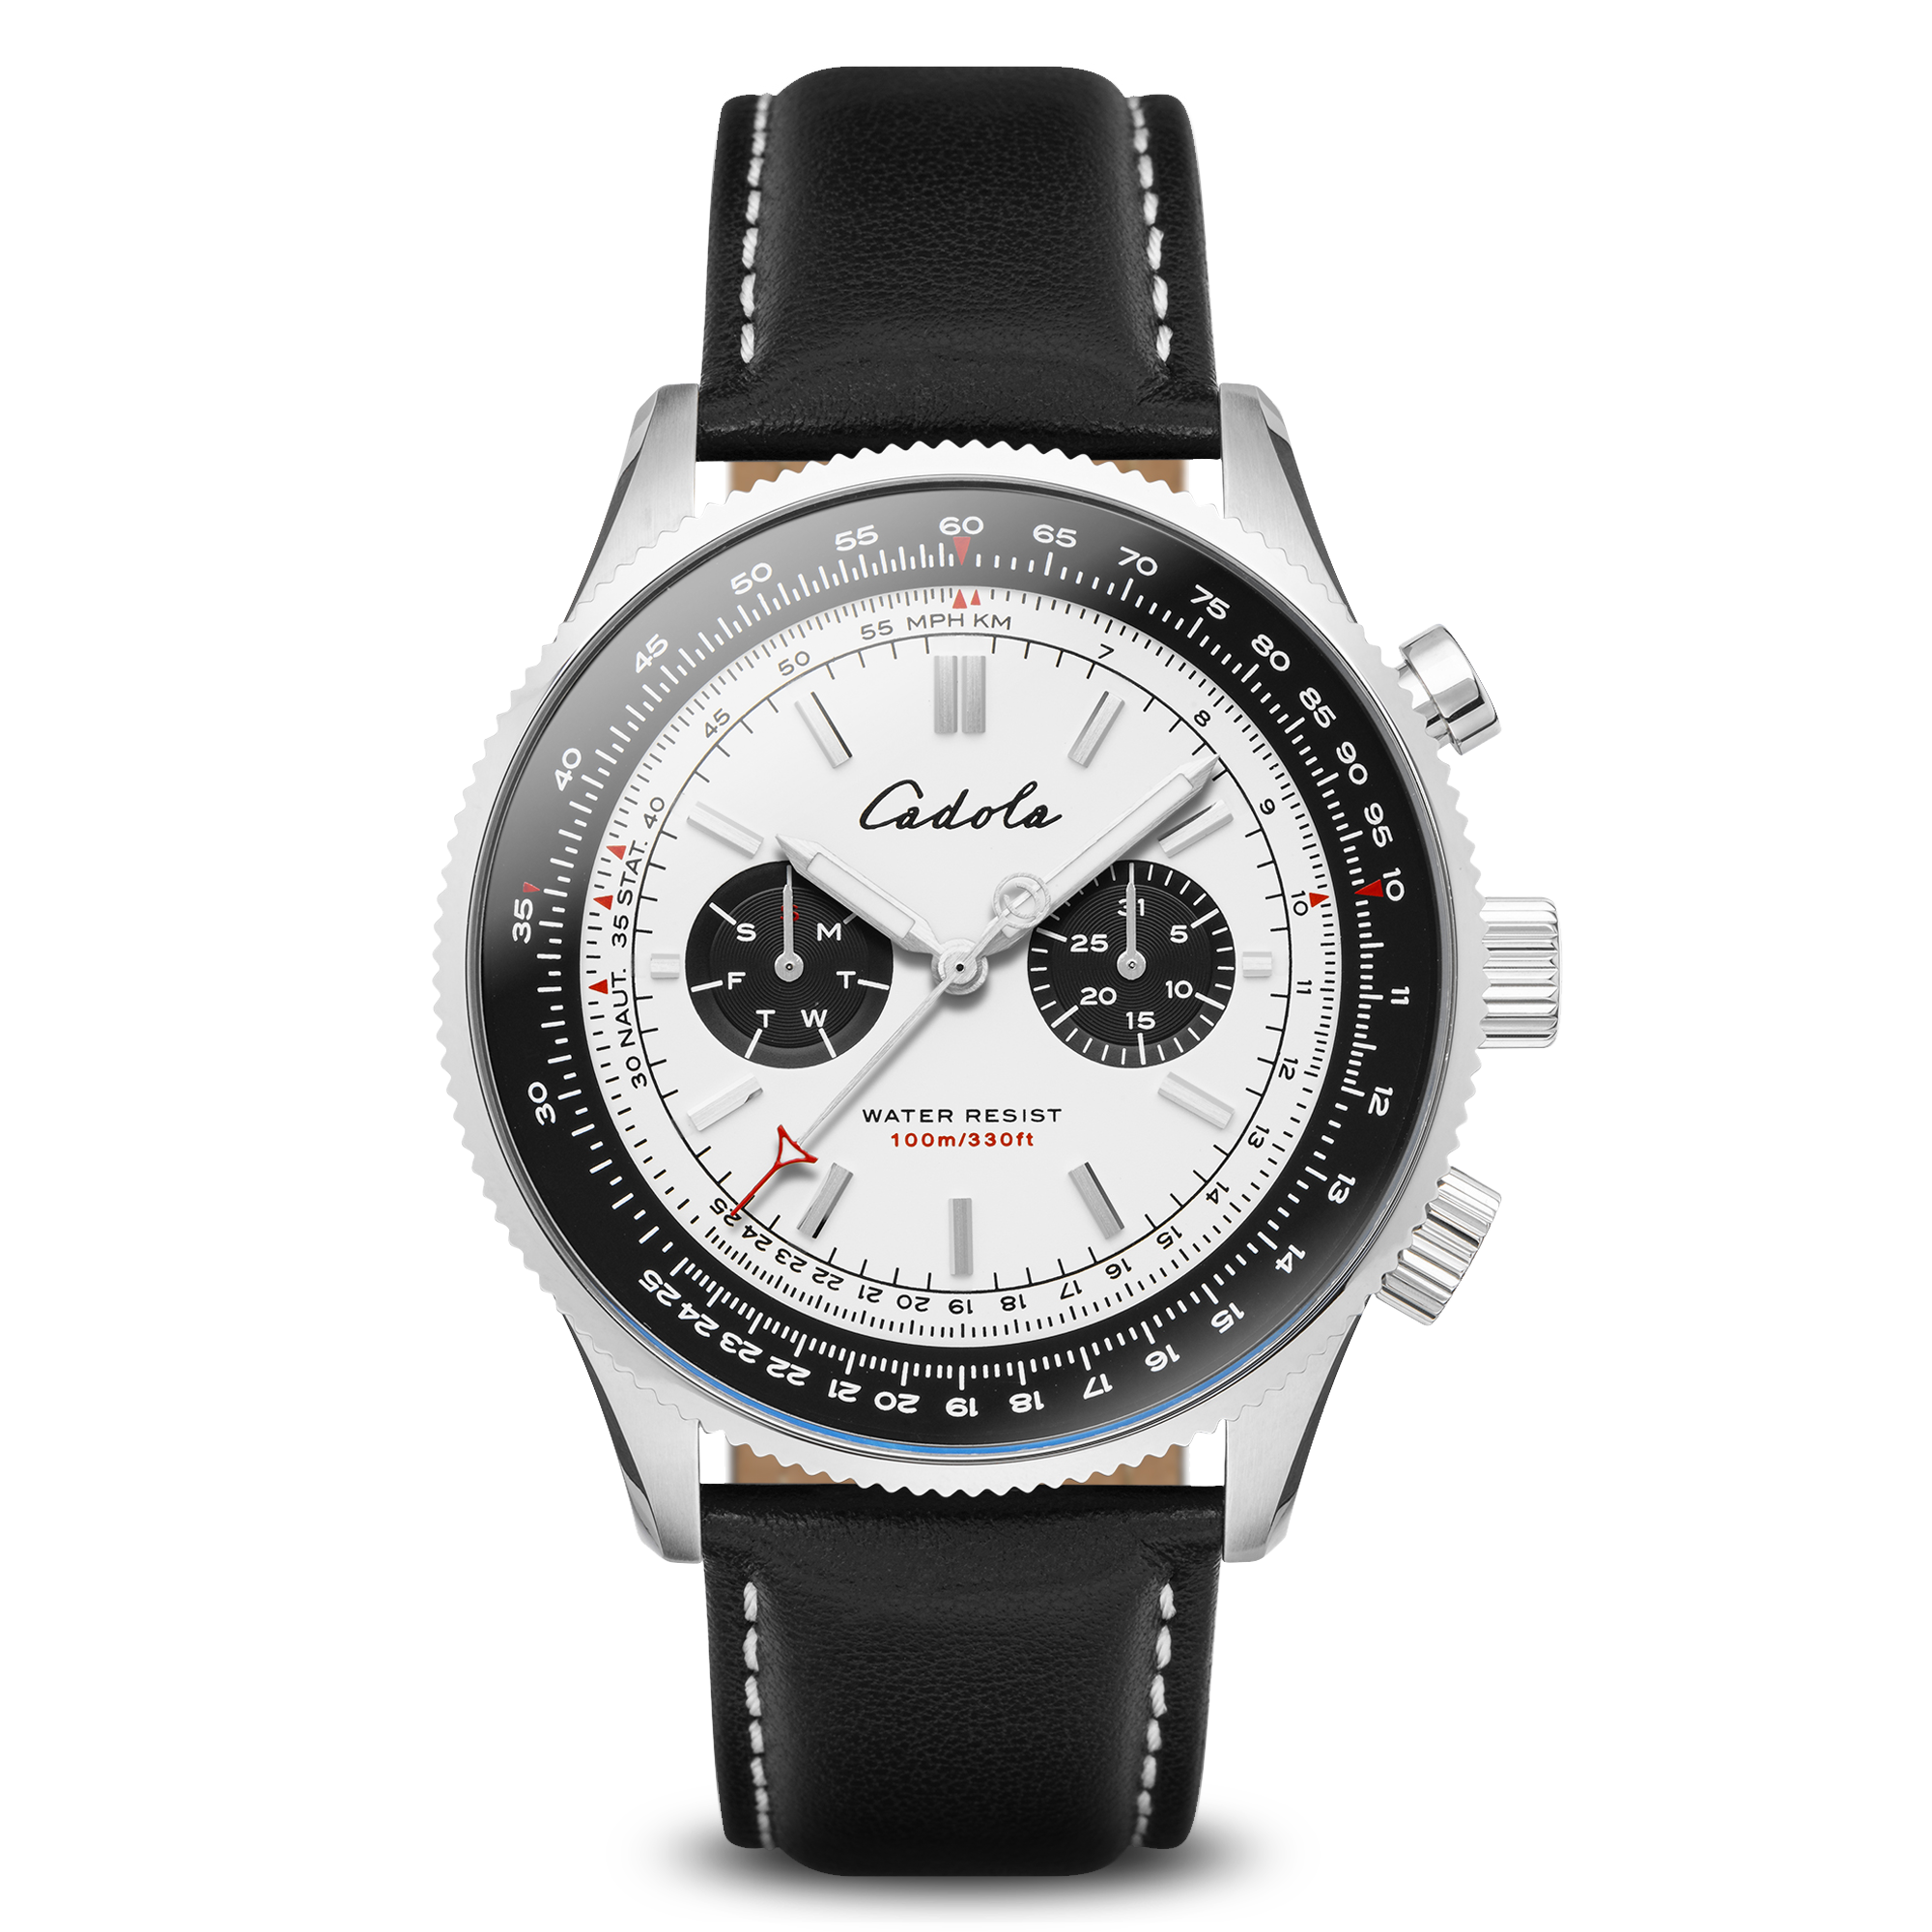 CADOLA Cadola Aviateur Men's Swiss Parts Quartz White Watch CD-1007-02